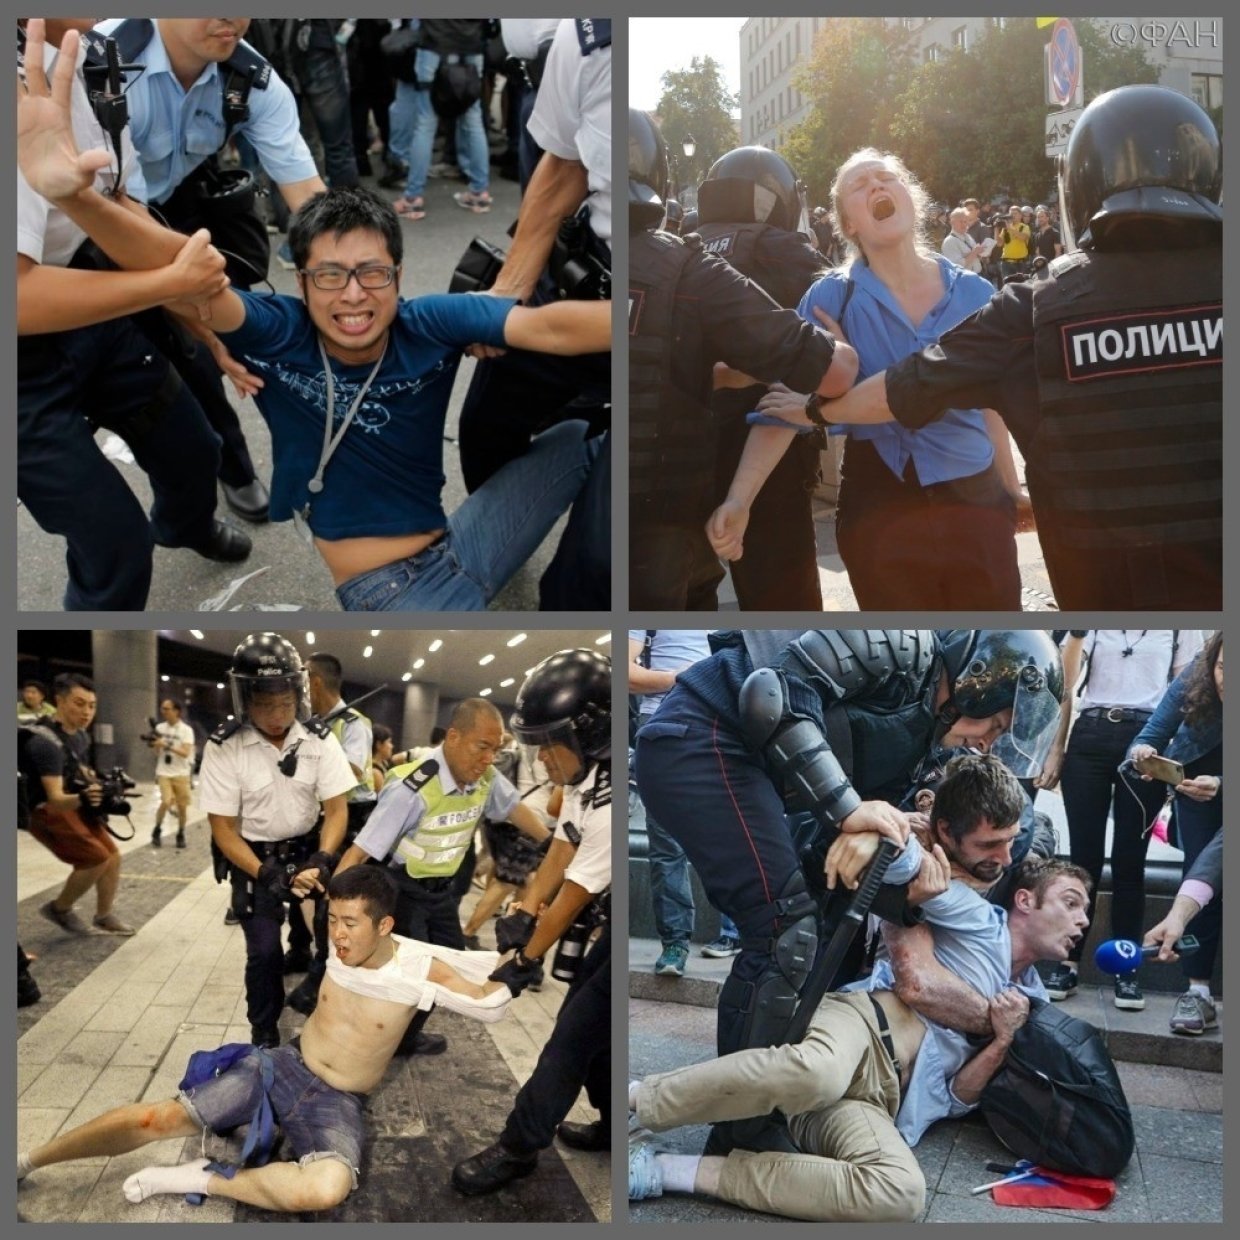 Протестные методички: как лекала Евромайдана всплыли в Москве и Гонконге